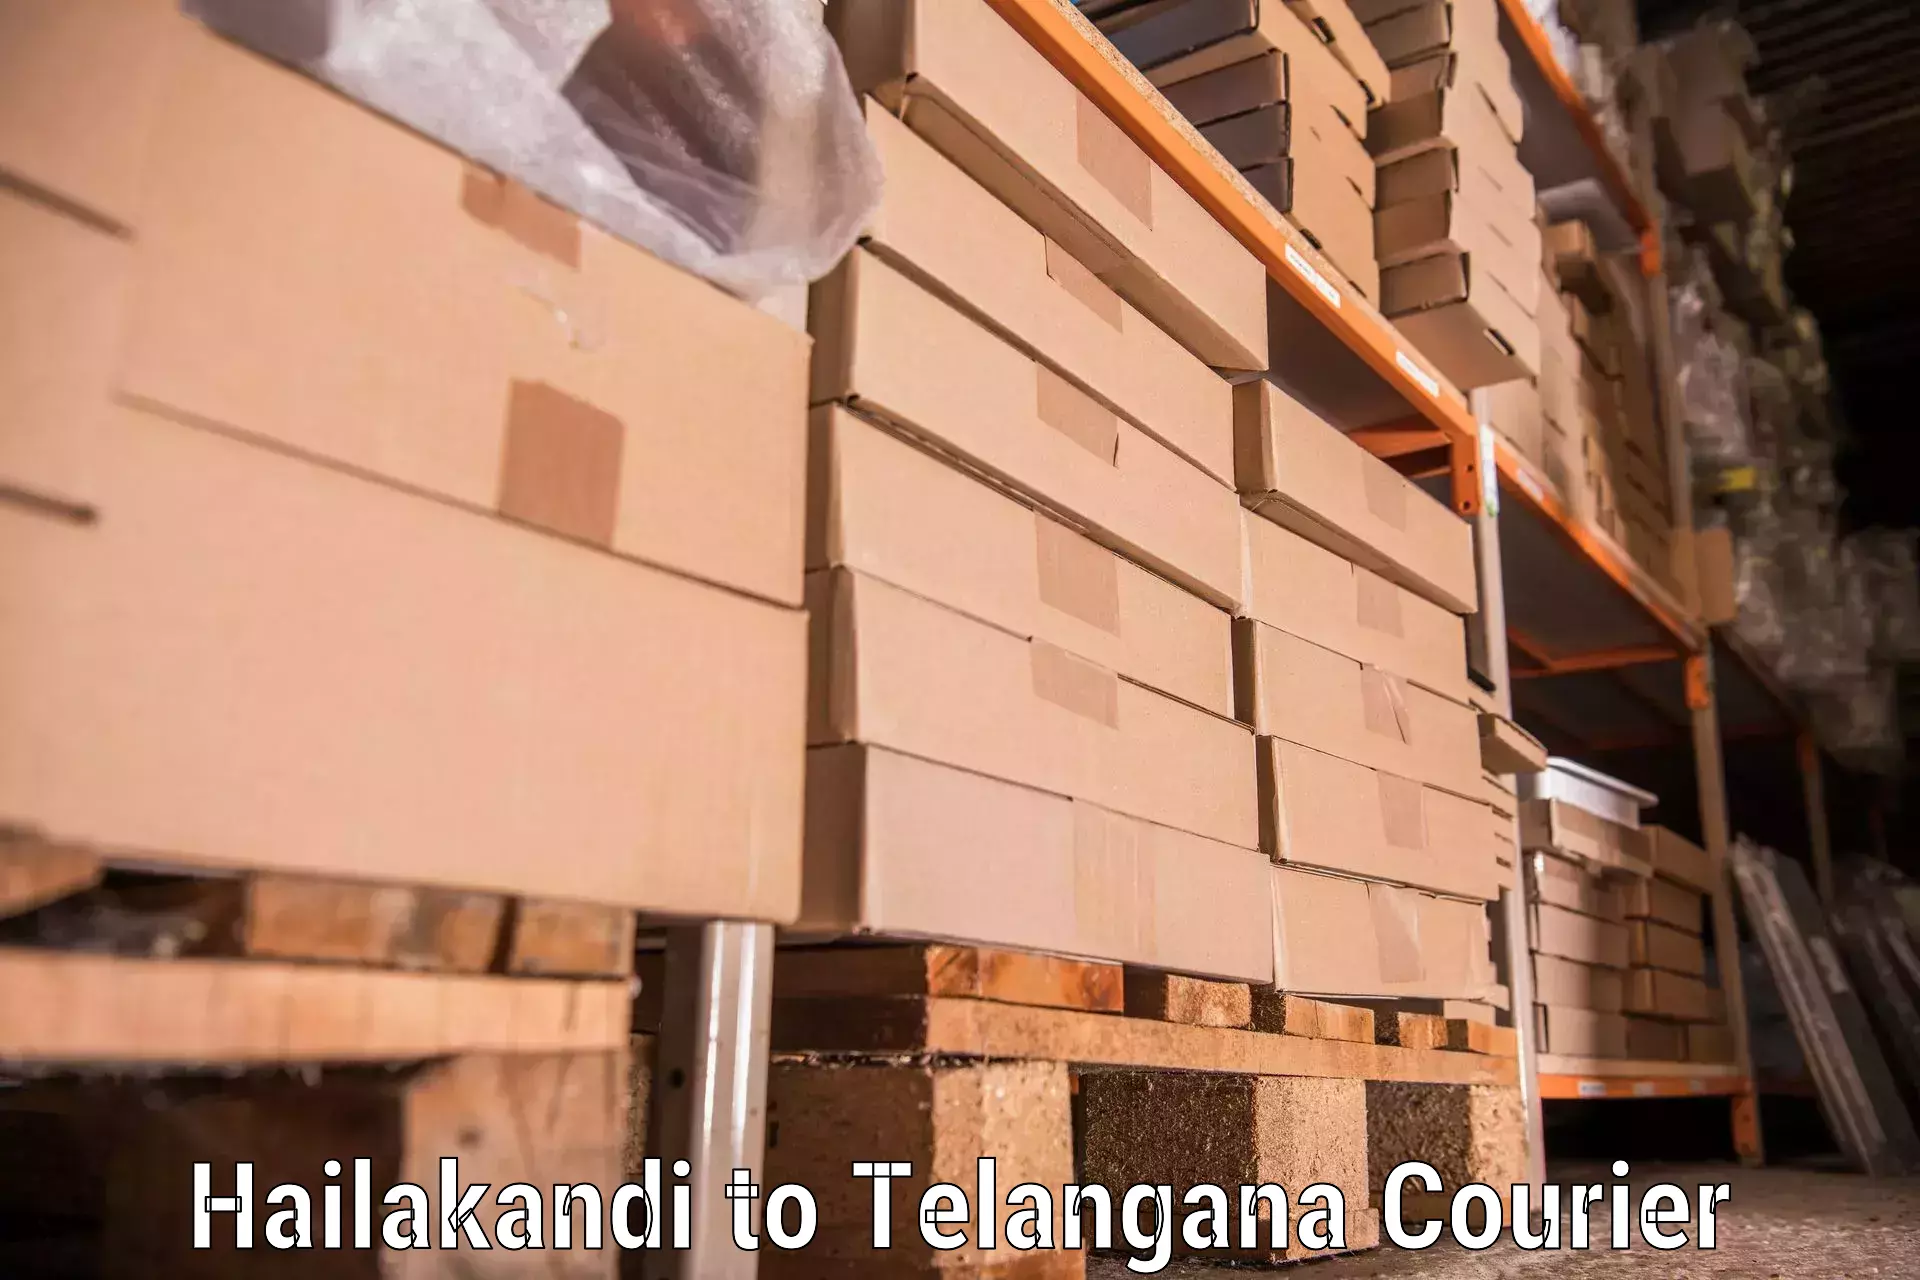 Home goods moving company Hailakandi to Vemulawada